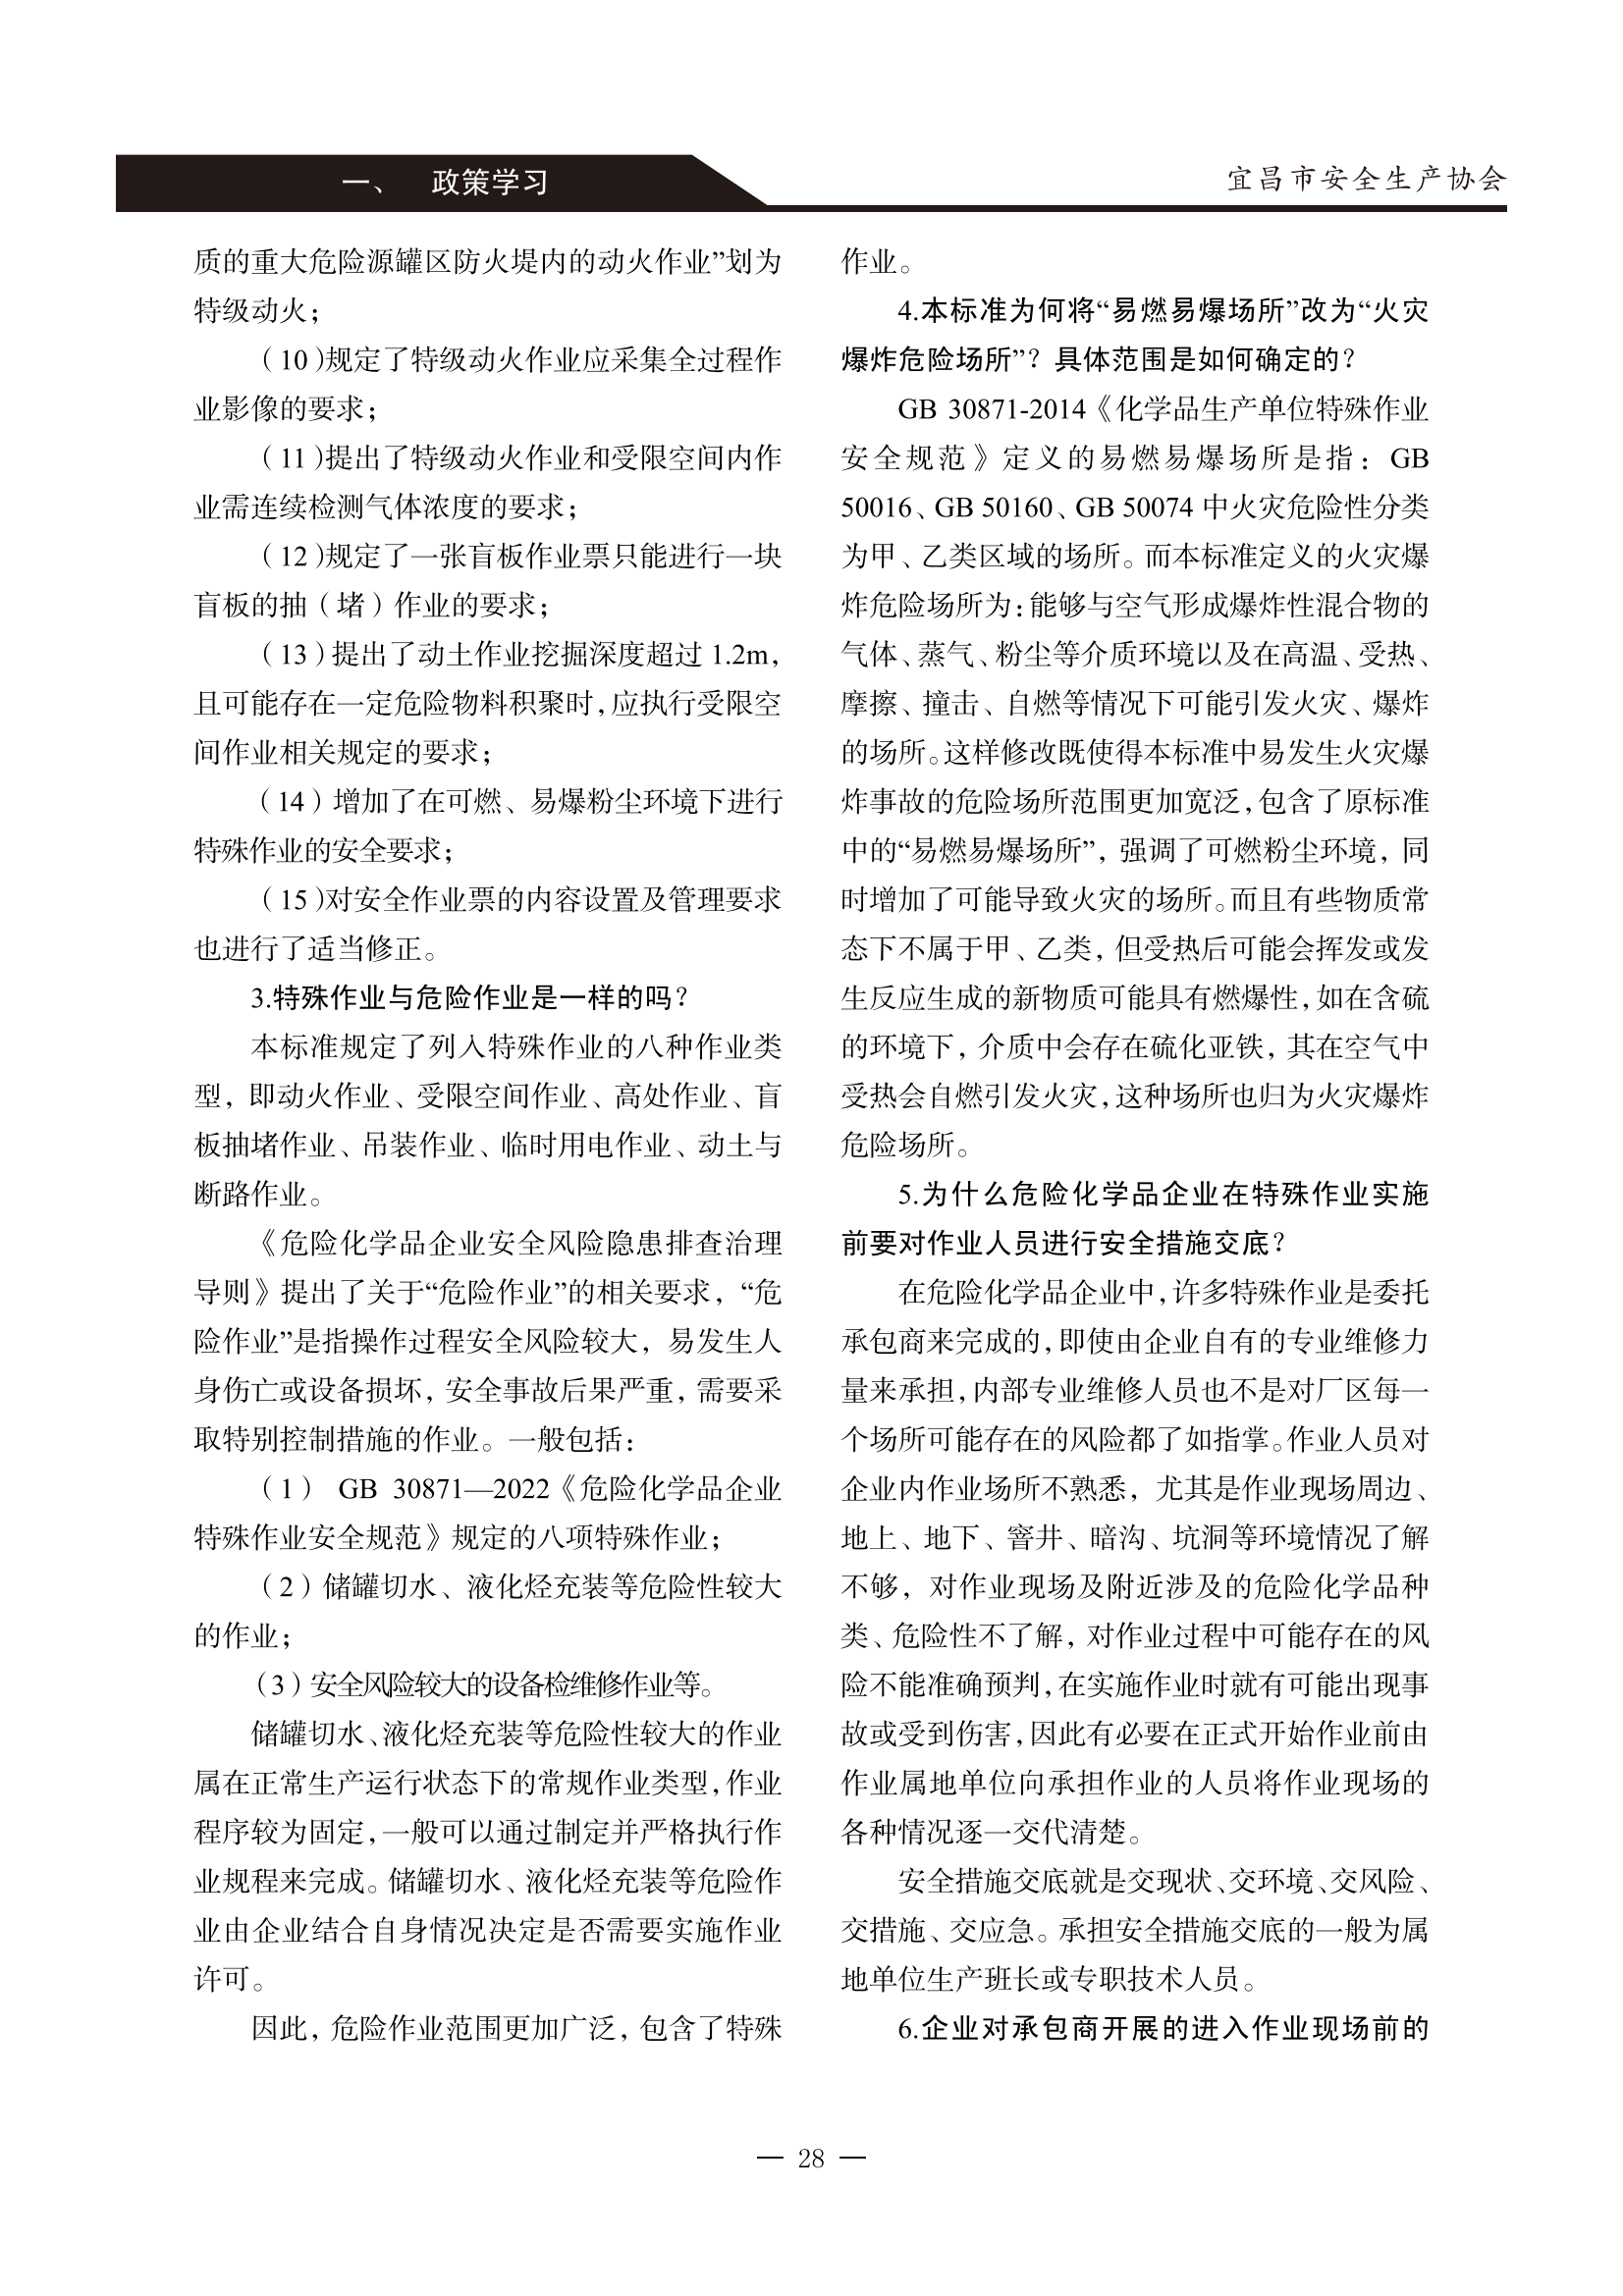 宜昌安全生产期刊第一期_33.png